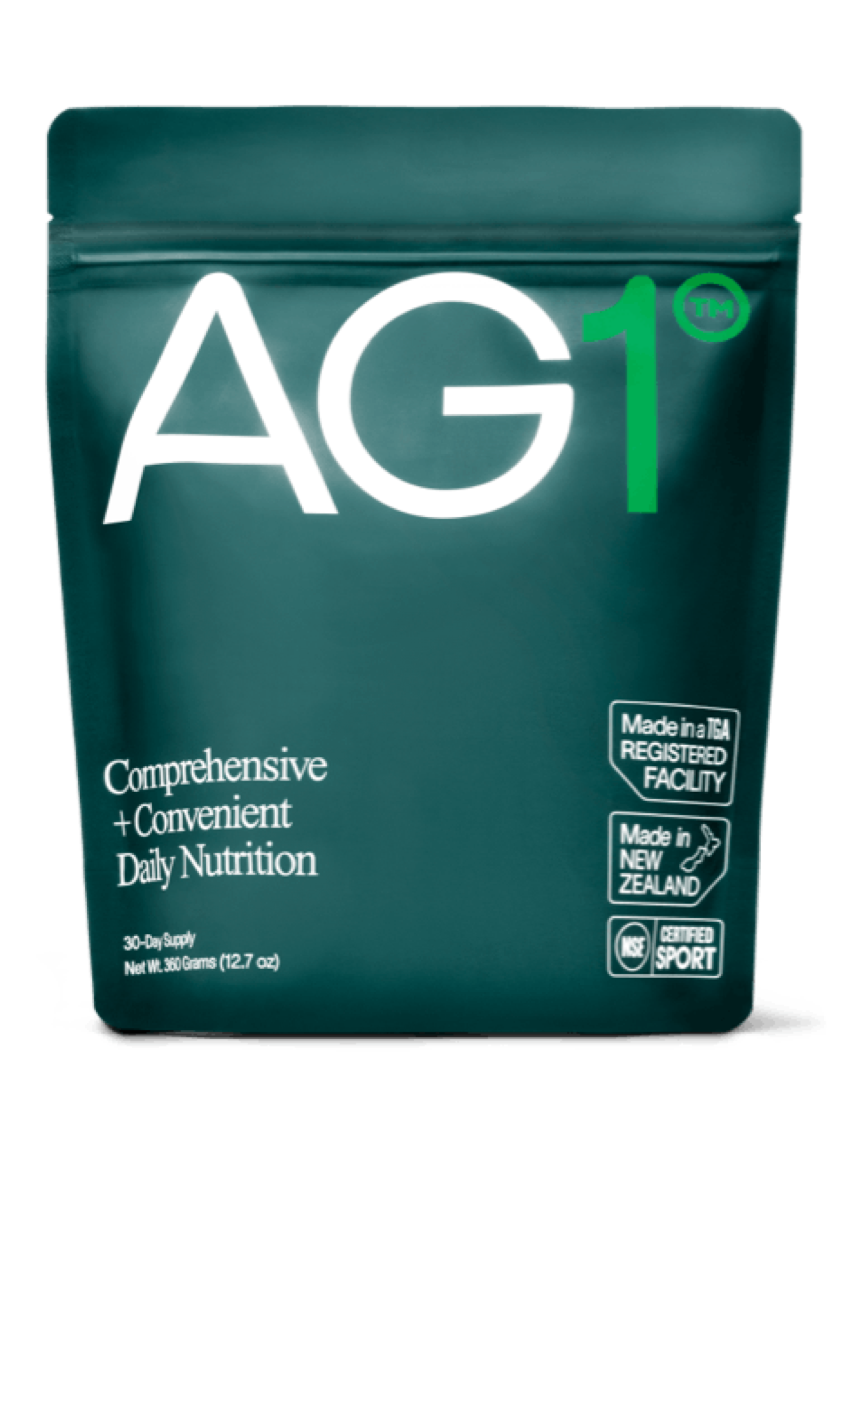 AG1 bag